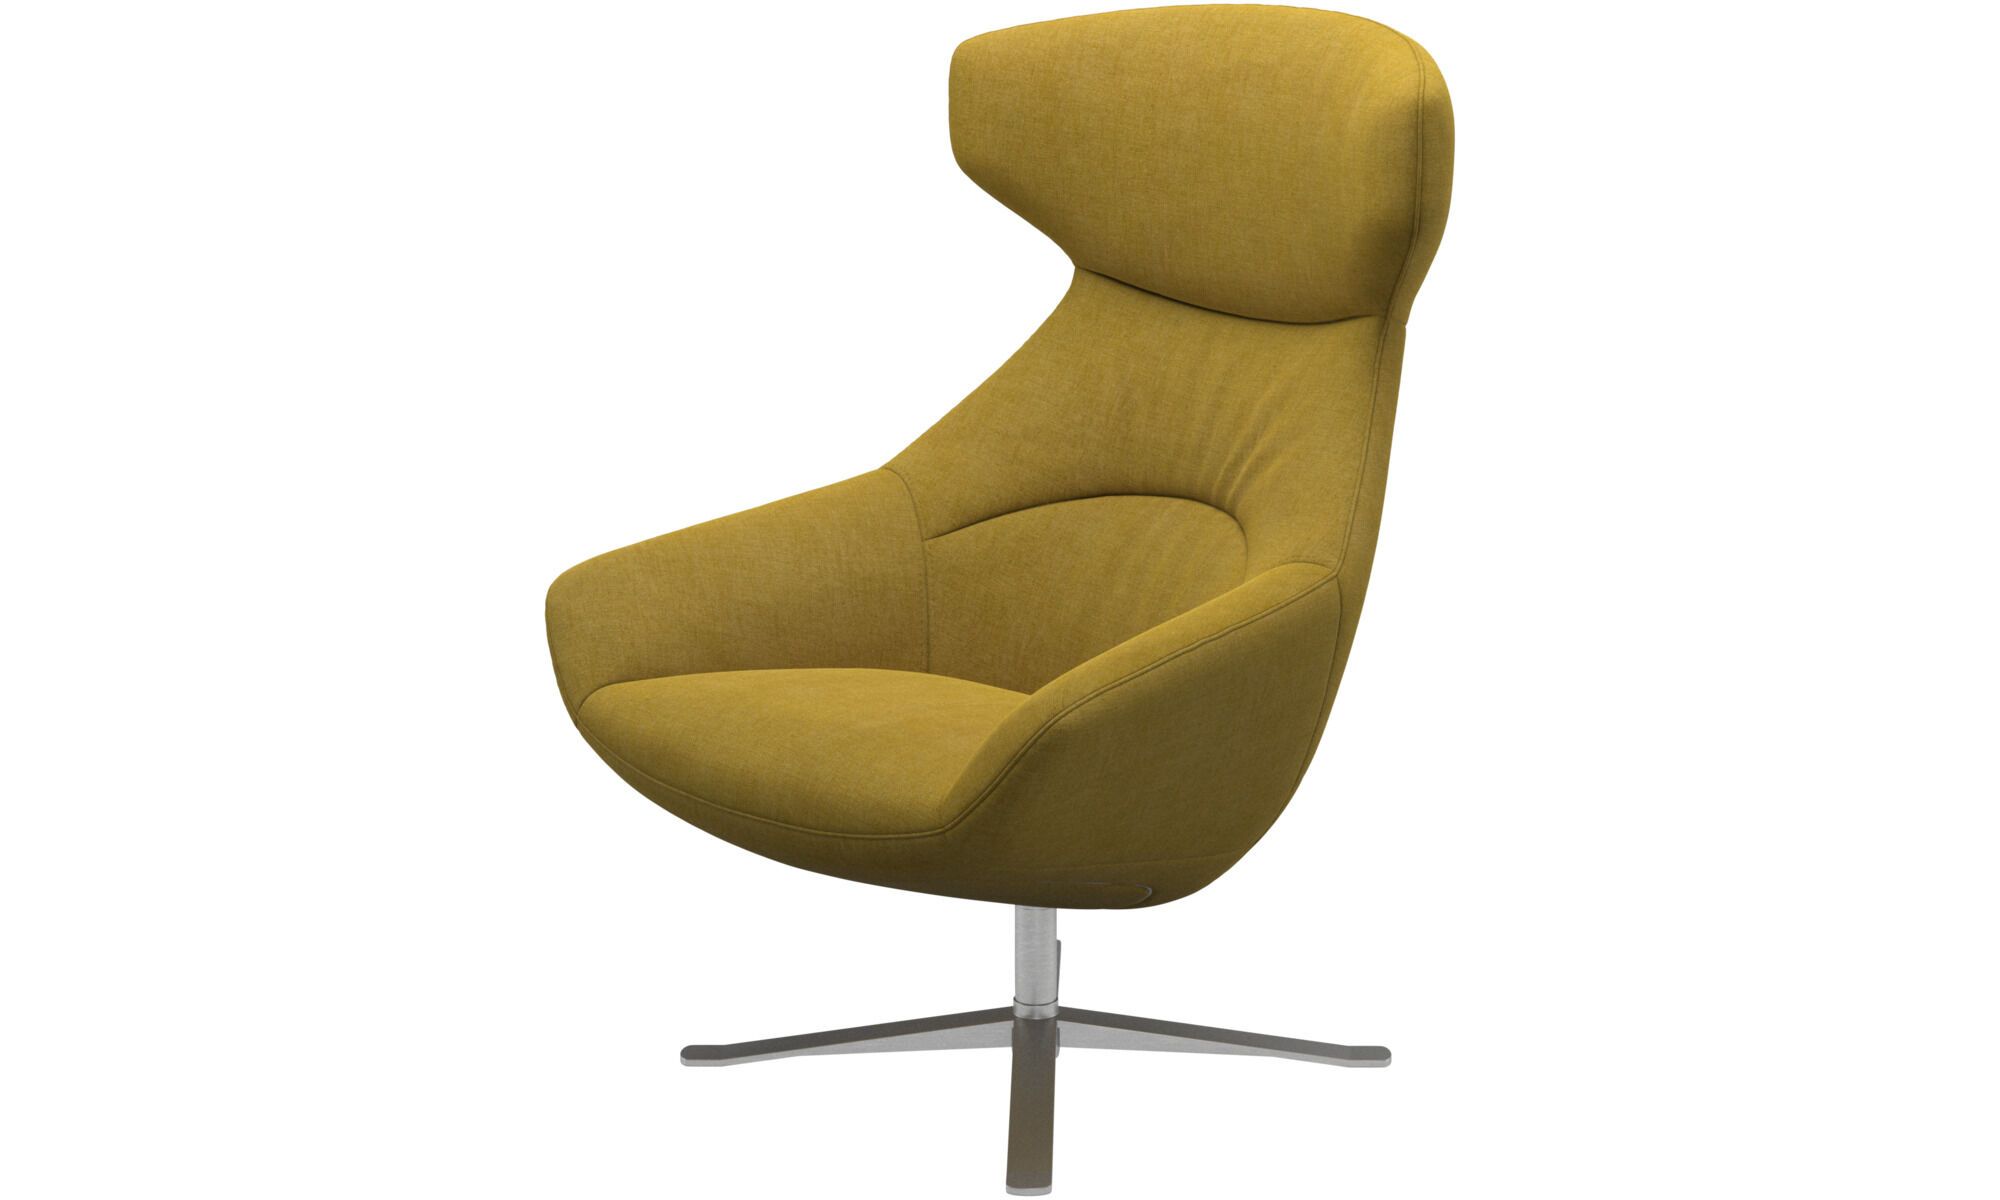 Кресло Porto с функцией вращения - Tomelilla fabric 3143 Mustard